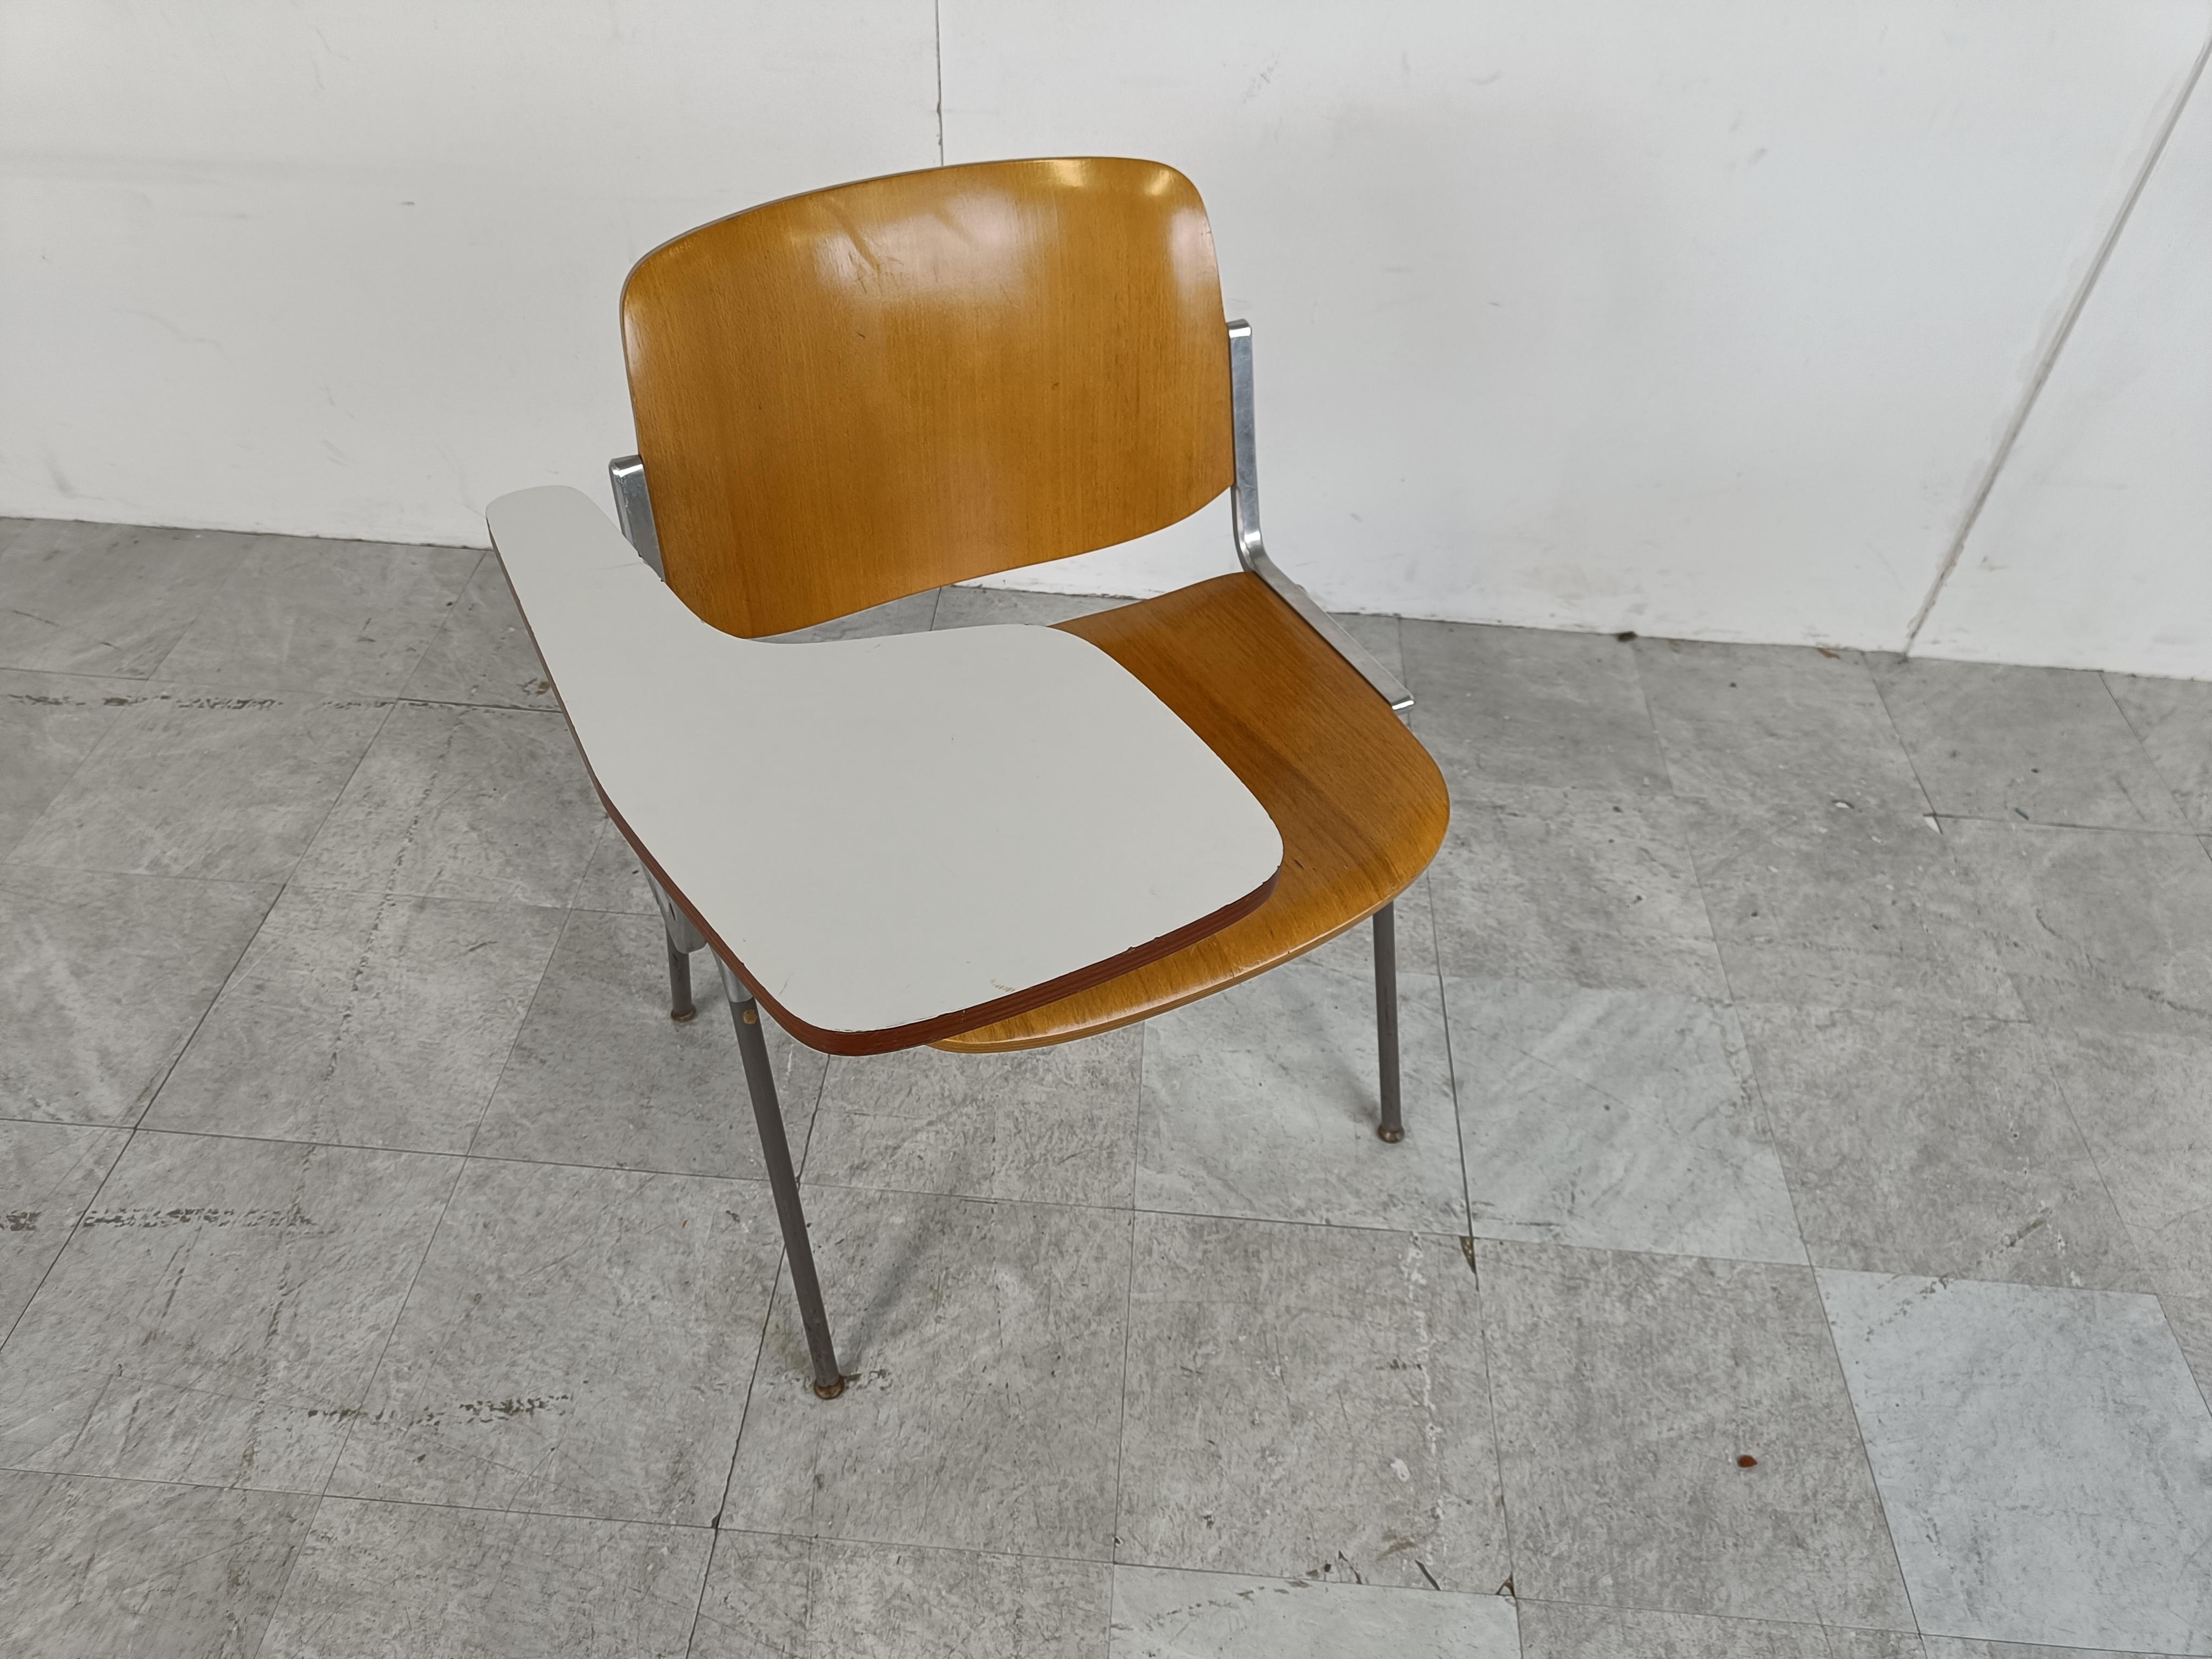 Vintage DSC 106 Stuhl mit klappbarem Tisch, entworfen von Giancarlo Piretti für Castelli.

Seltenes Modell mit Klapptisch.

Guter Zustand

1970er Jahre - Italien

Abmessungen:
Höhe: 78cm/30.70